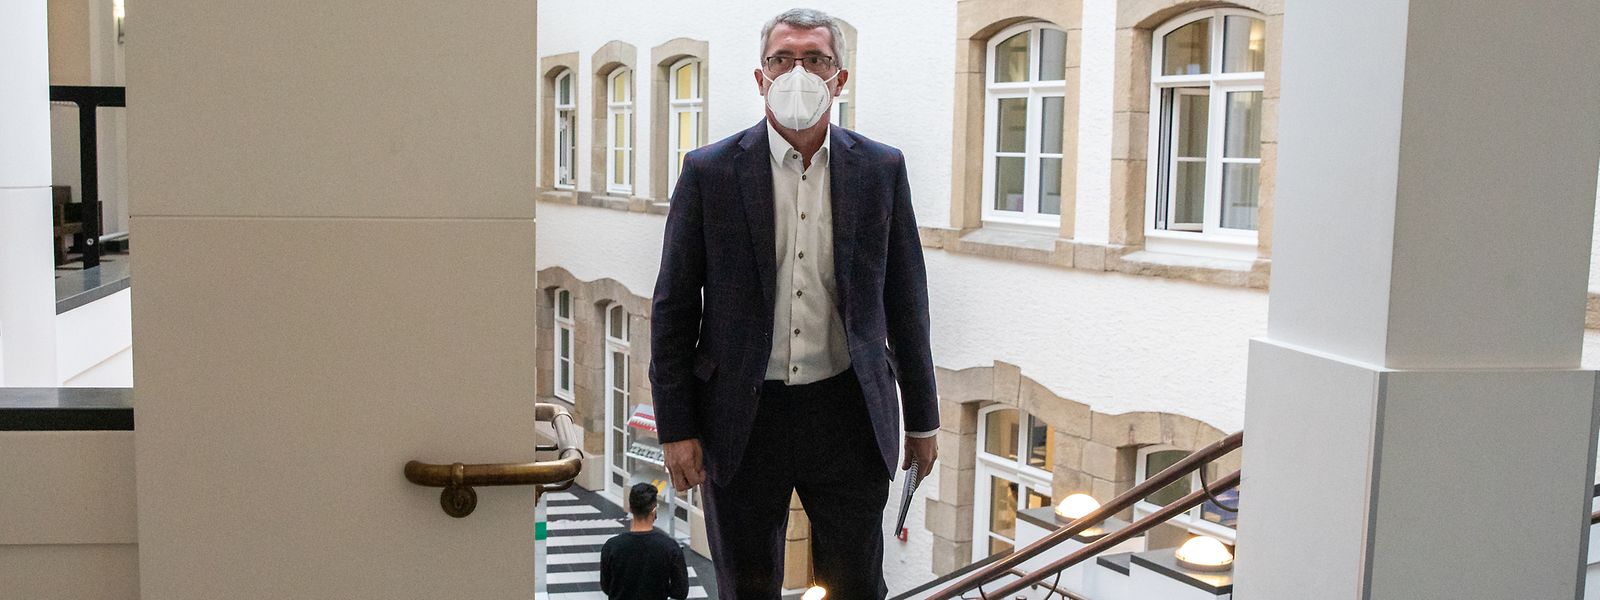 Pour le premier jour du procès de l'affaire «CSV Frëndeskrees», Frank Engel n'a pas hésité à pointer du doigt ses anciens collègues de parti, estimant avoir été victime d'une manœuvre politicienne.